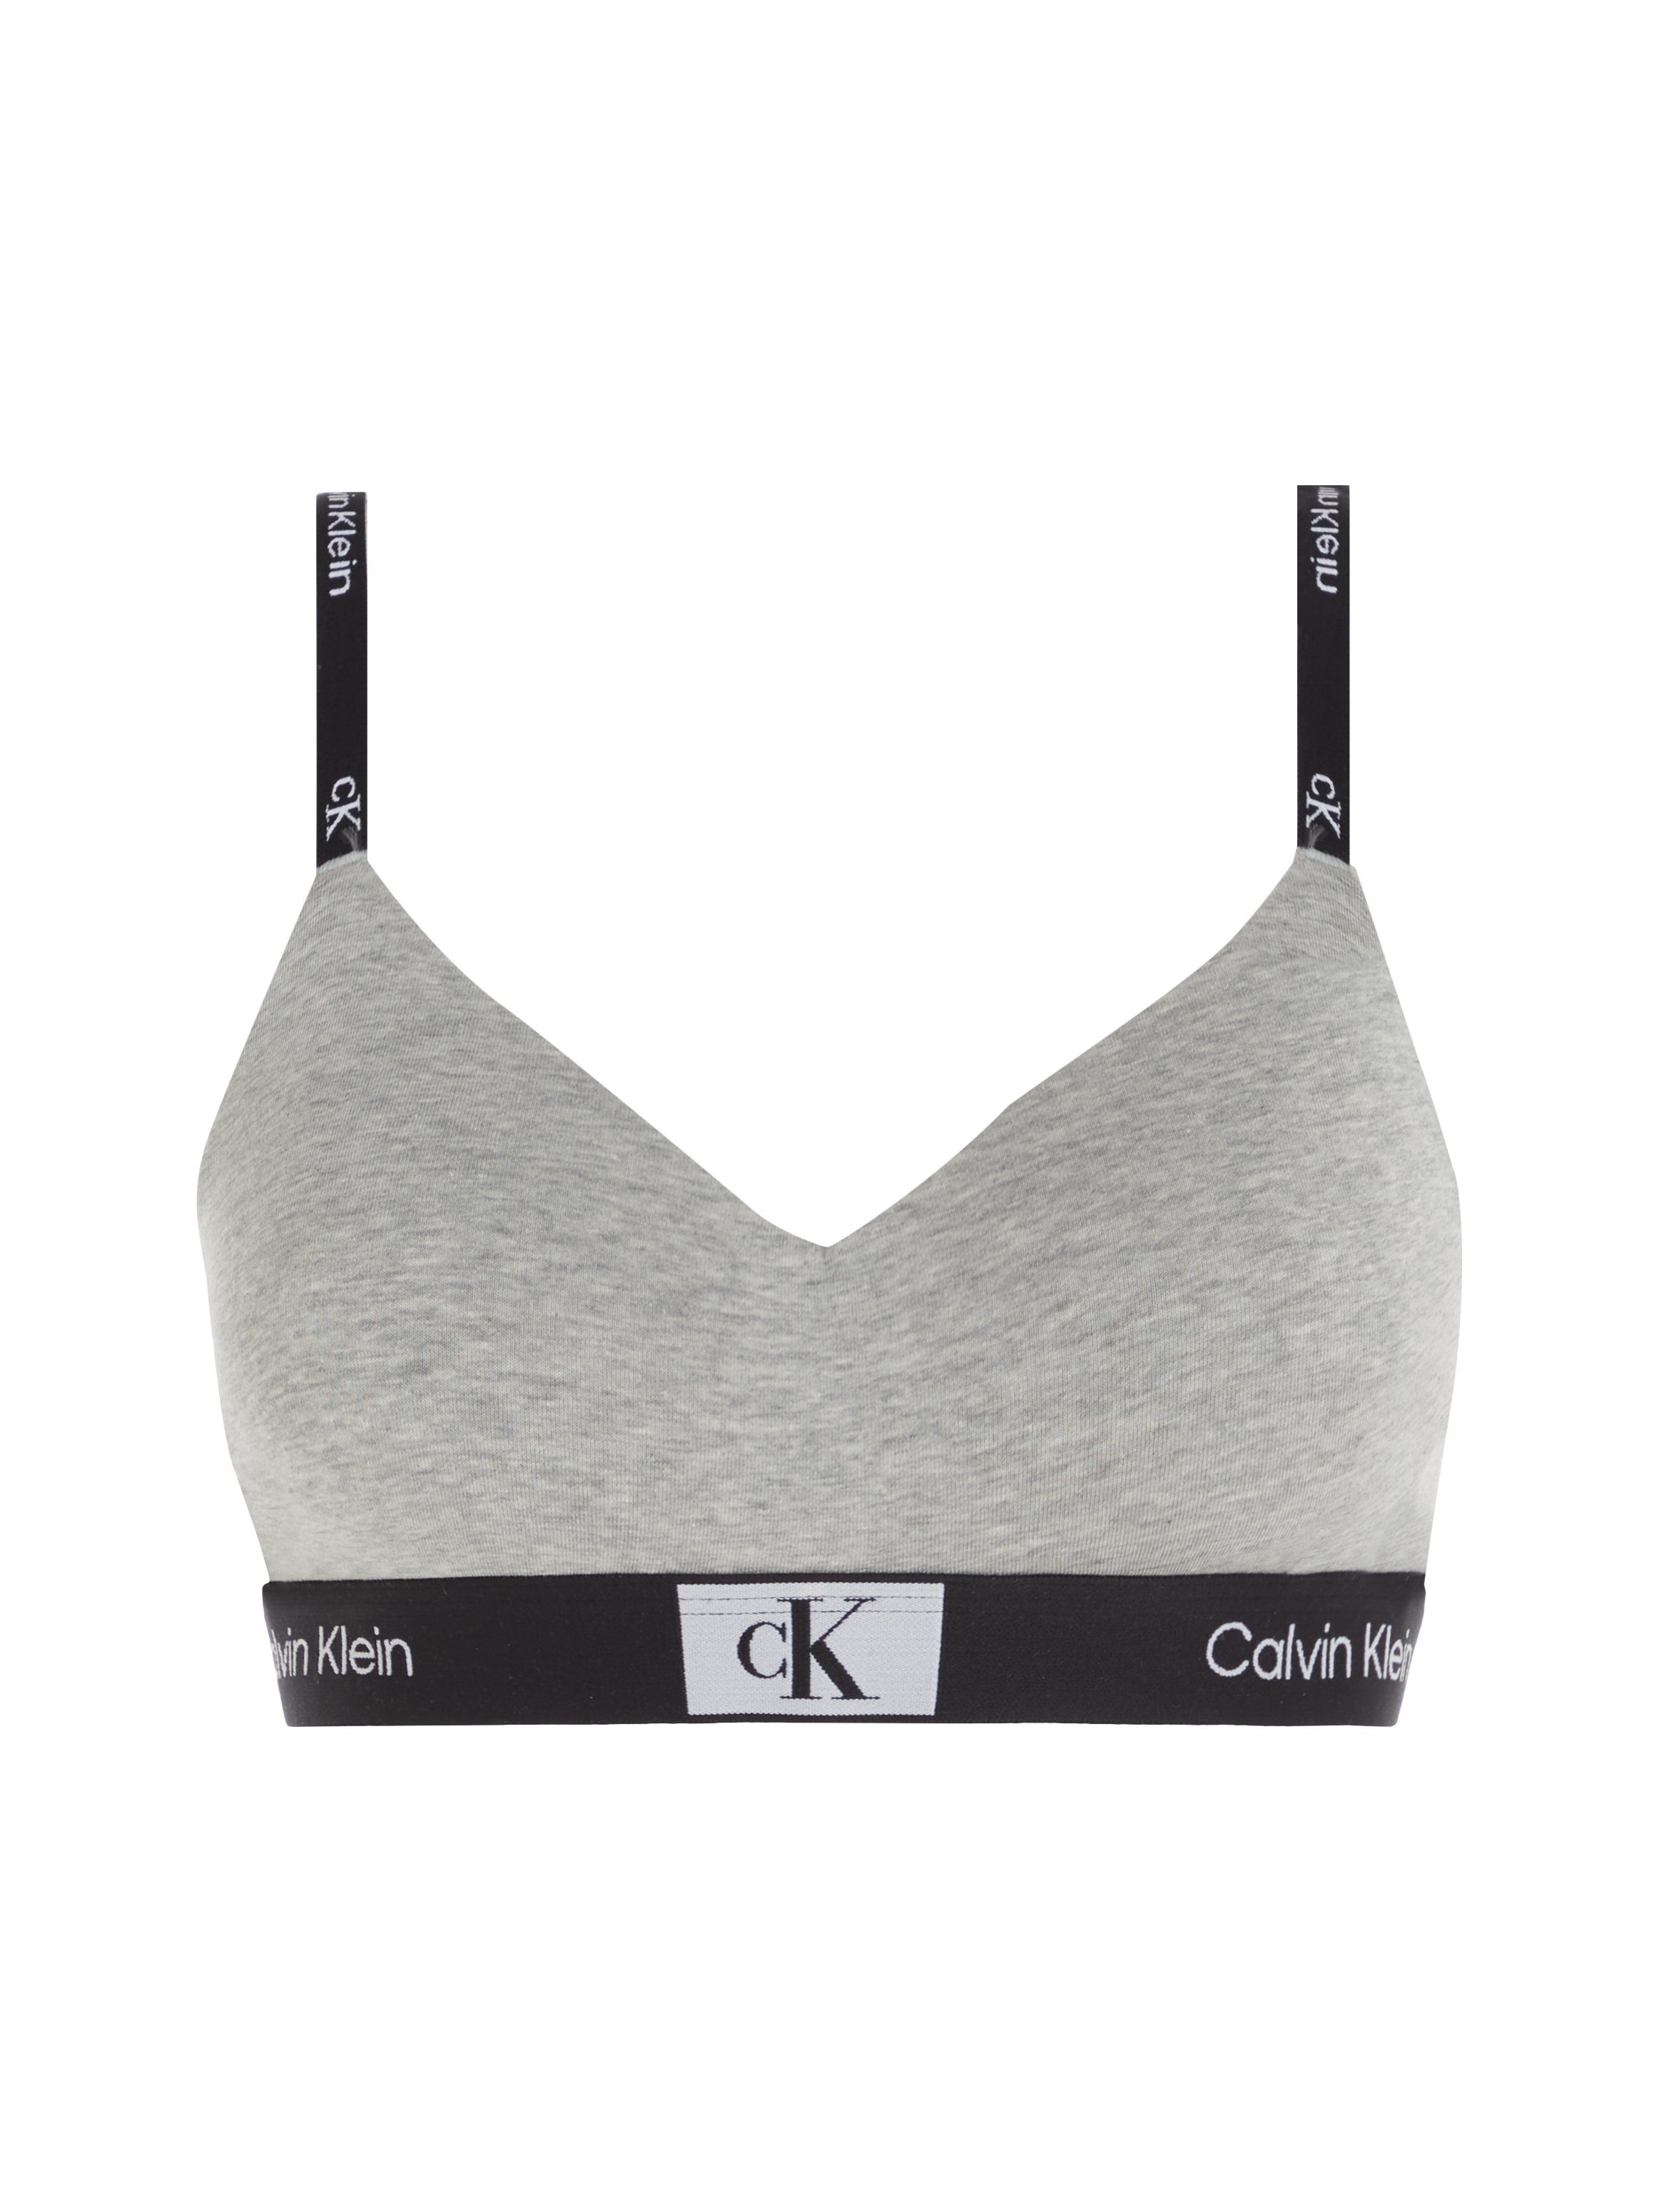 Klein Calvin Underwear Bralette-BH klassischem mit CK-Logobund grau